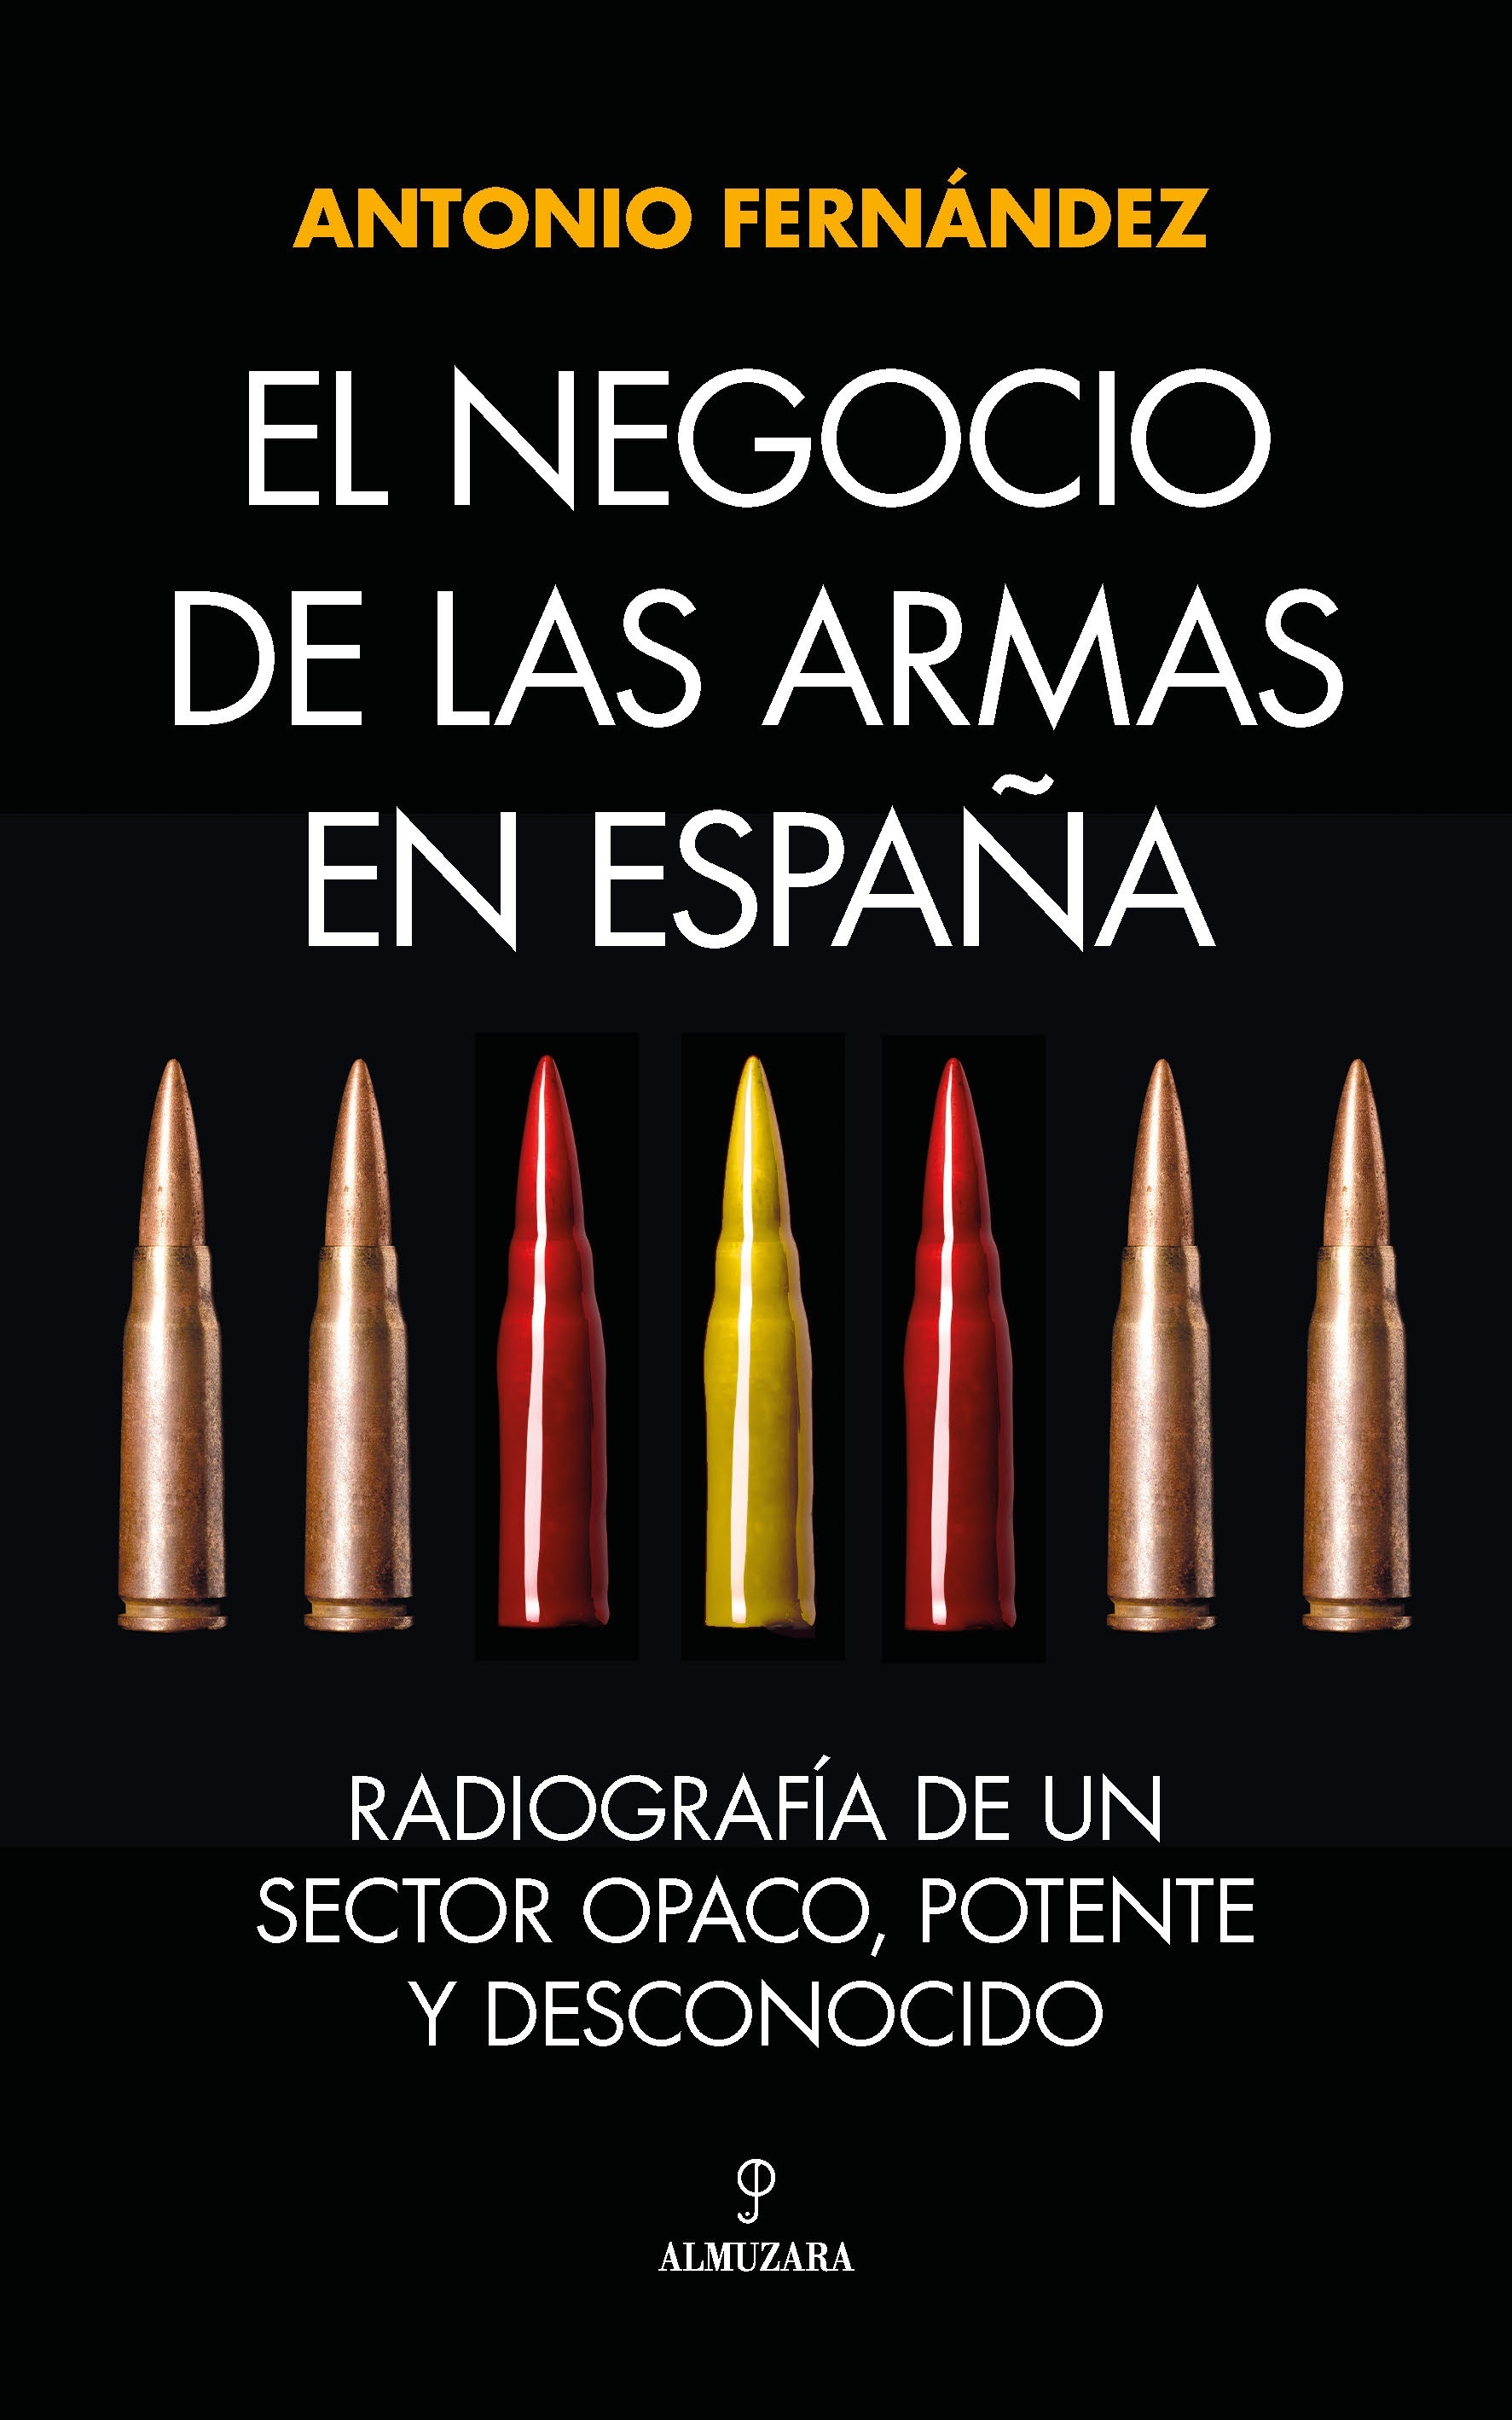 Negocio de las armas en España, El "Radiografía de un sector opaco, potente y desconocido"